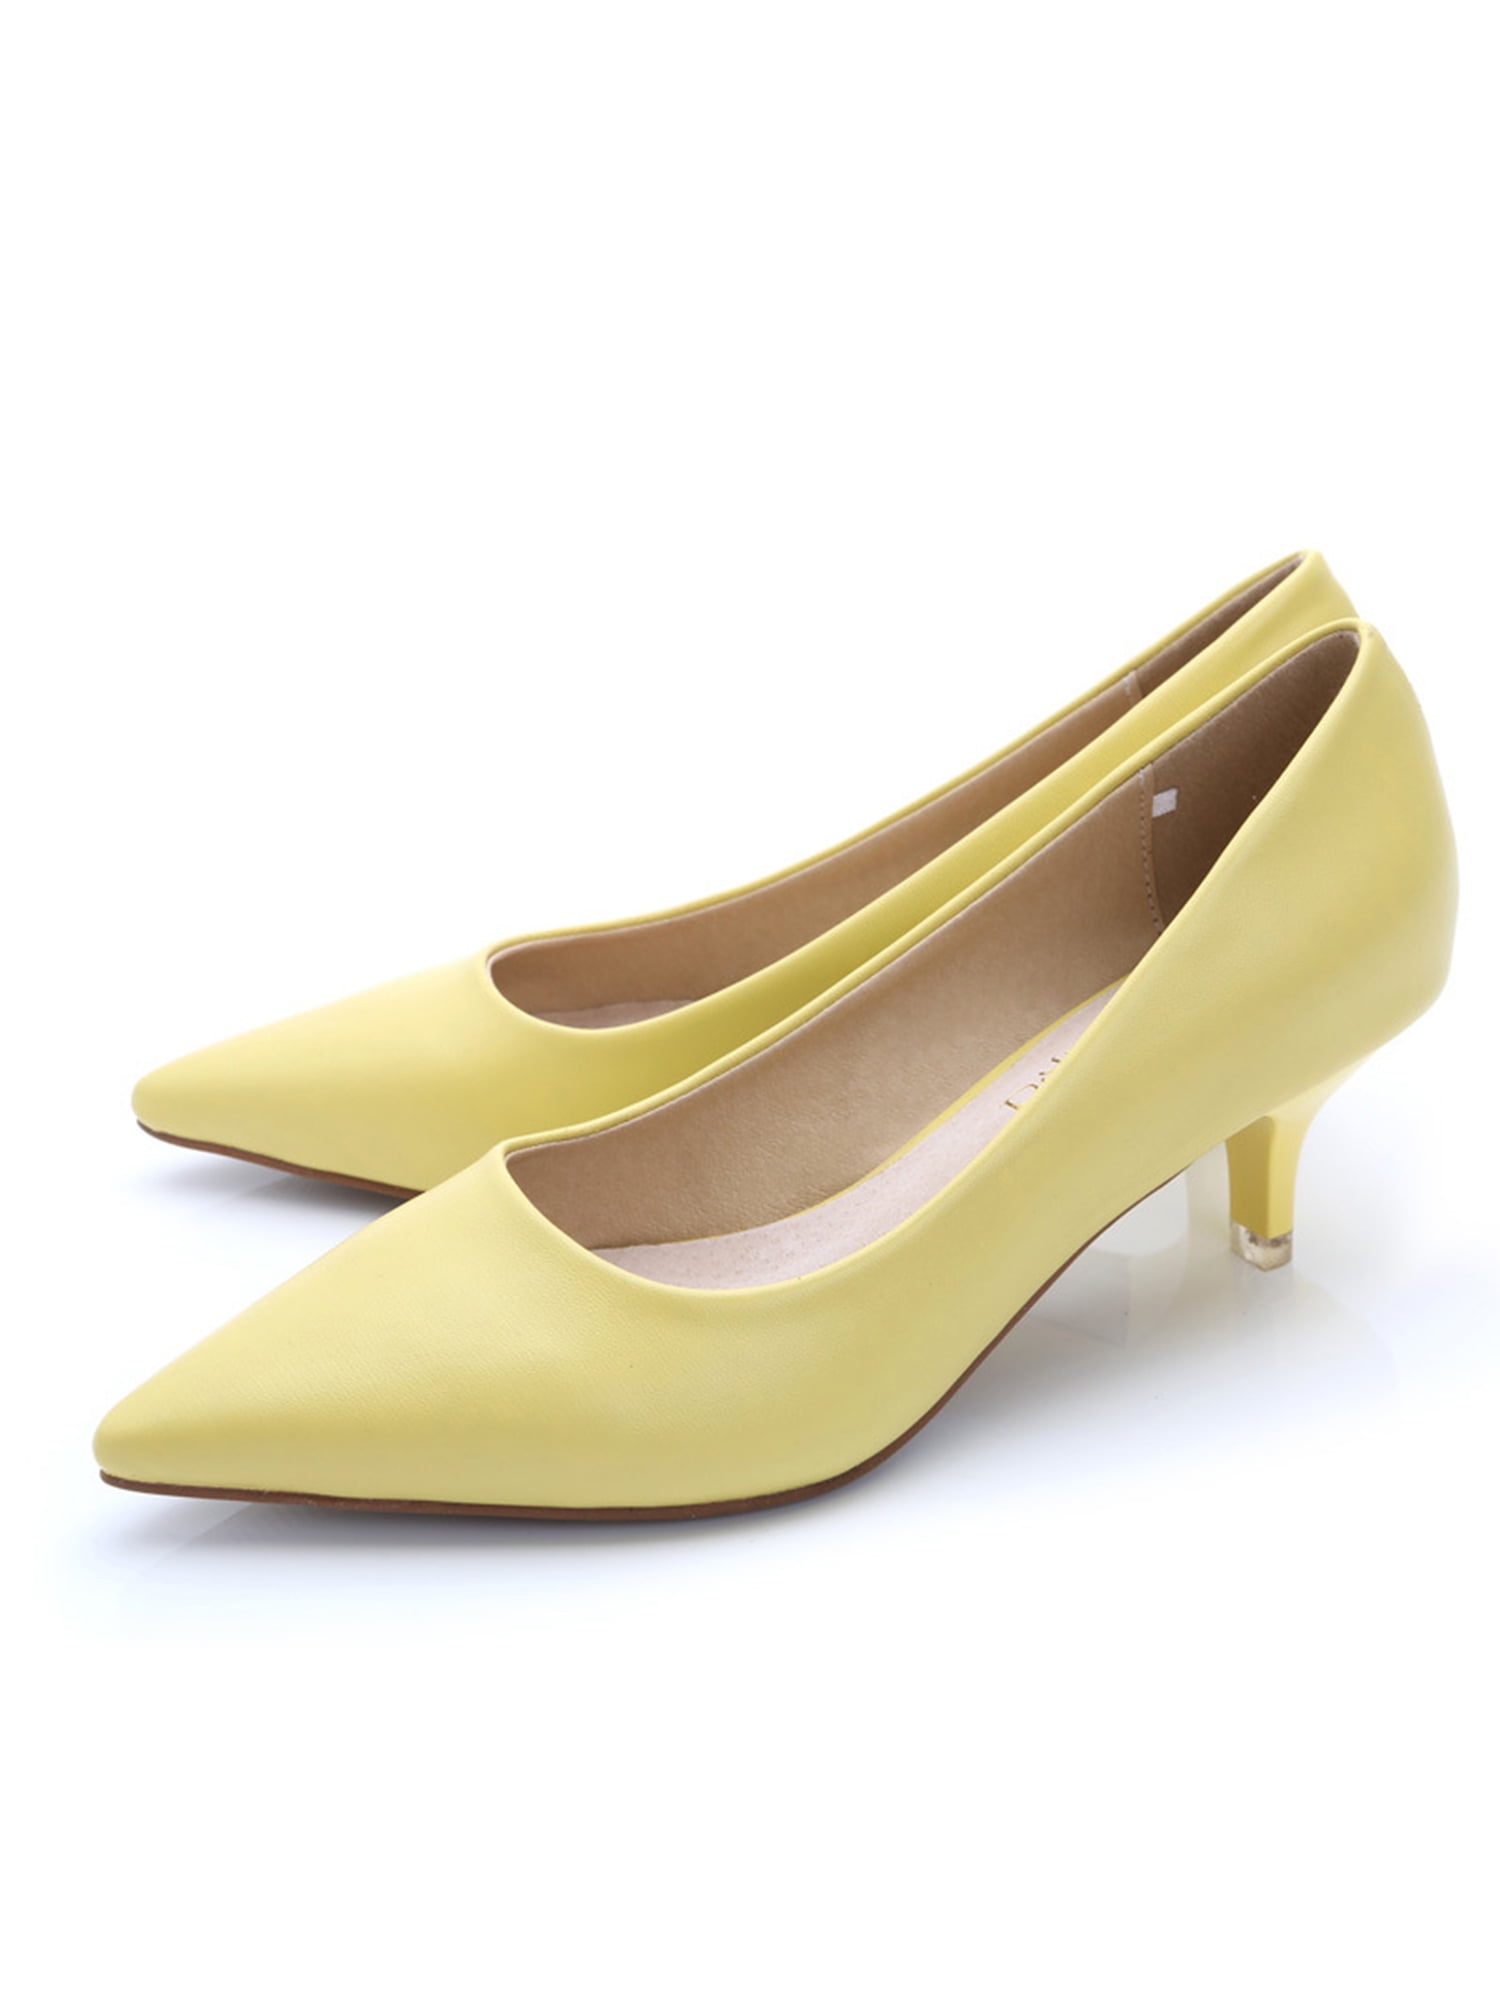 Buy Women Yellow Casual Heels Online - 746641 | Allen Solly